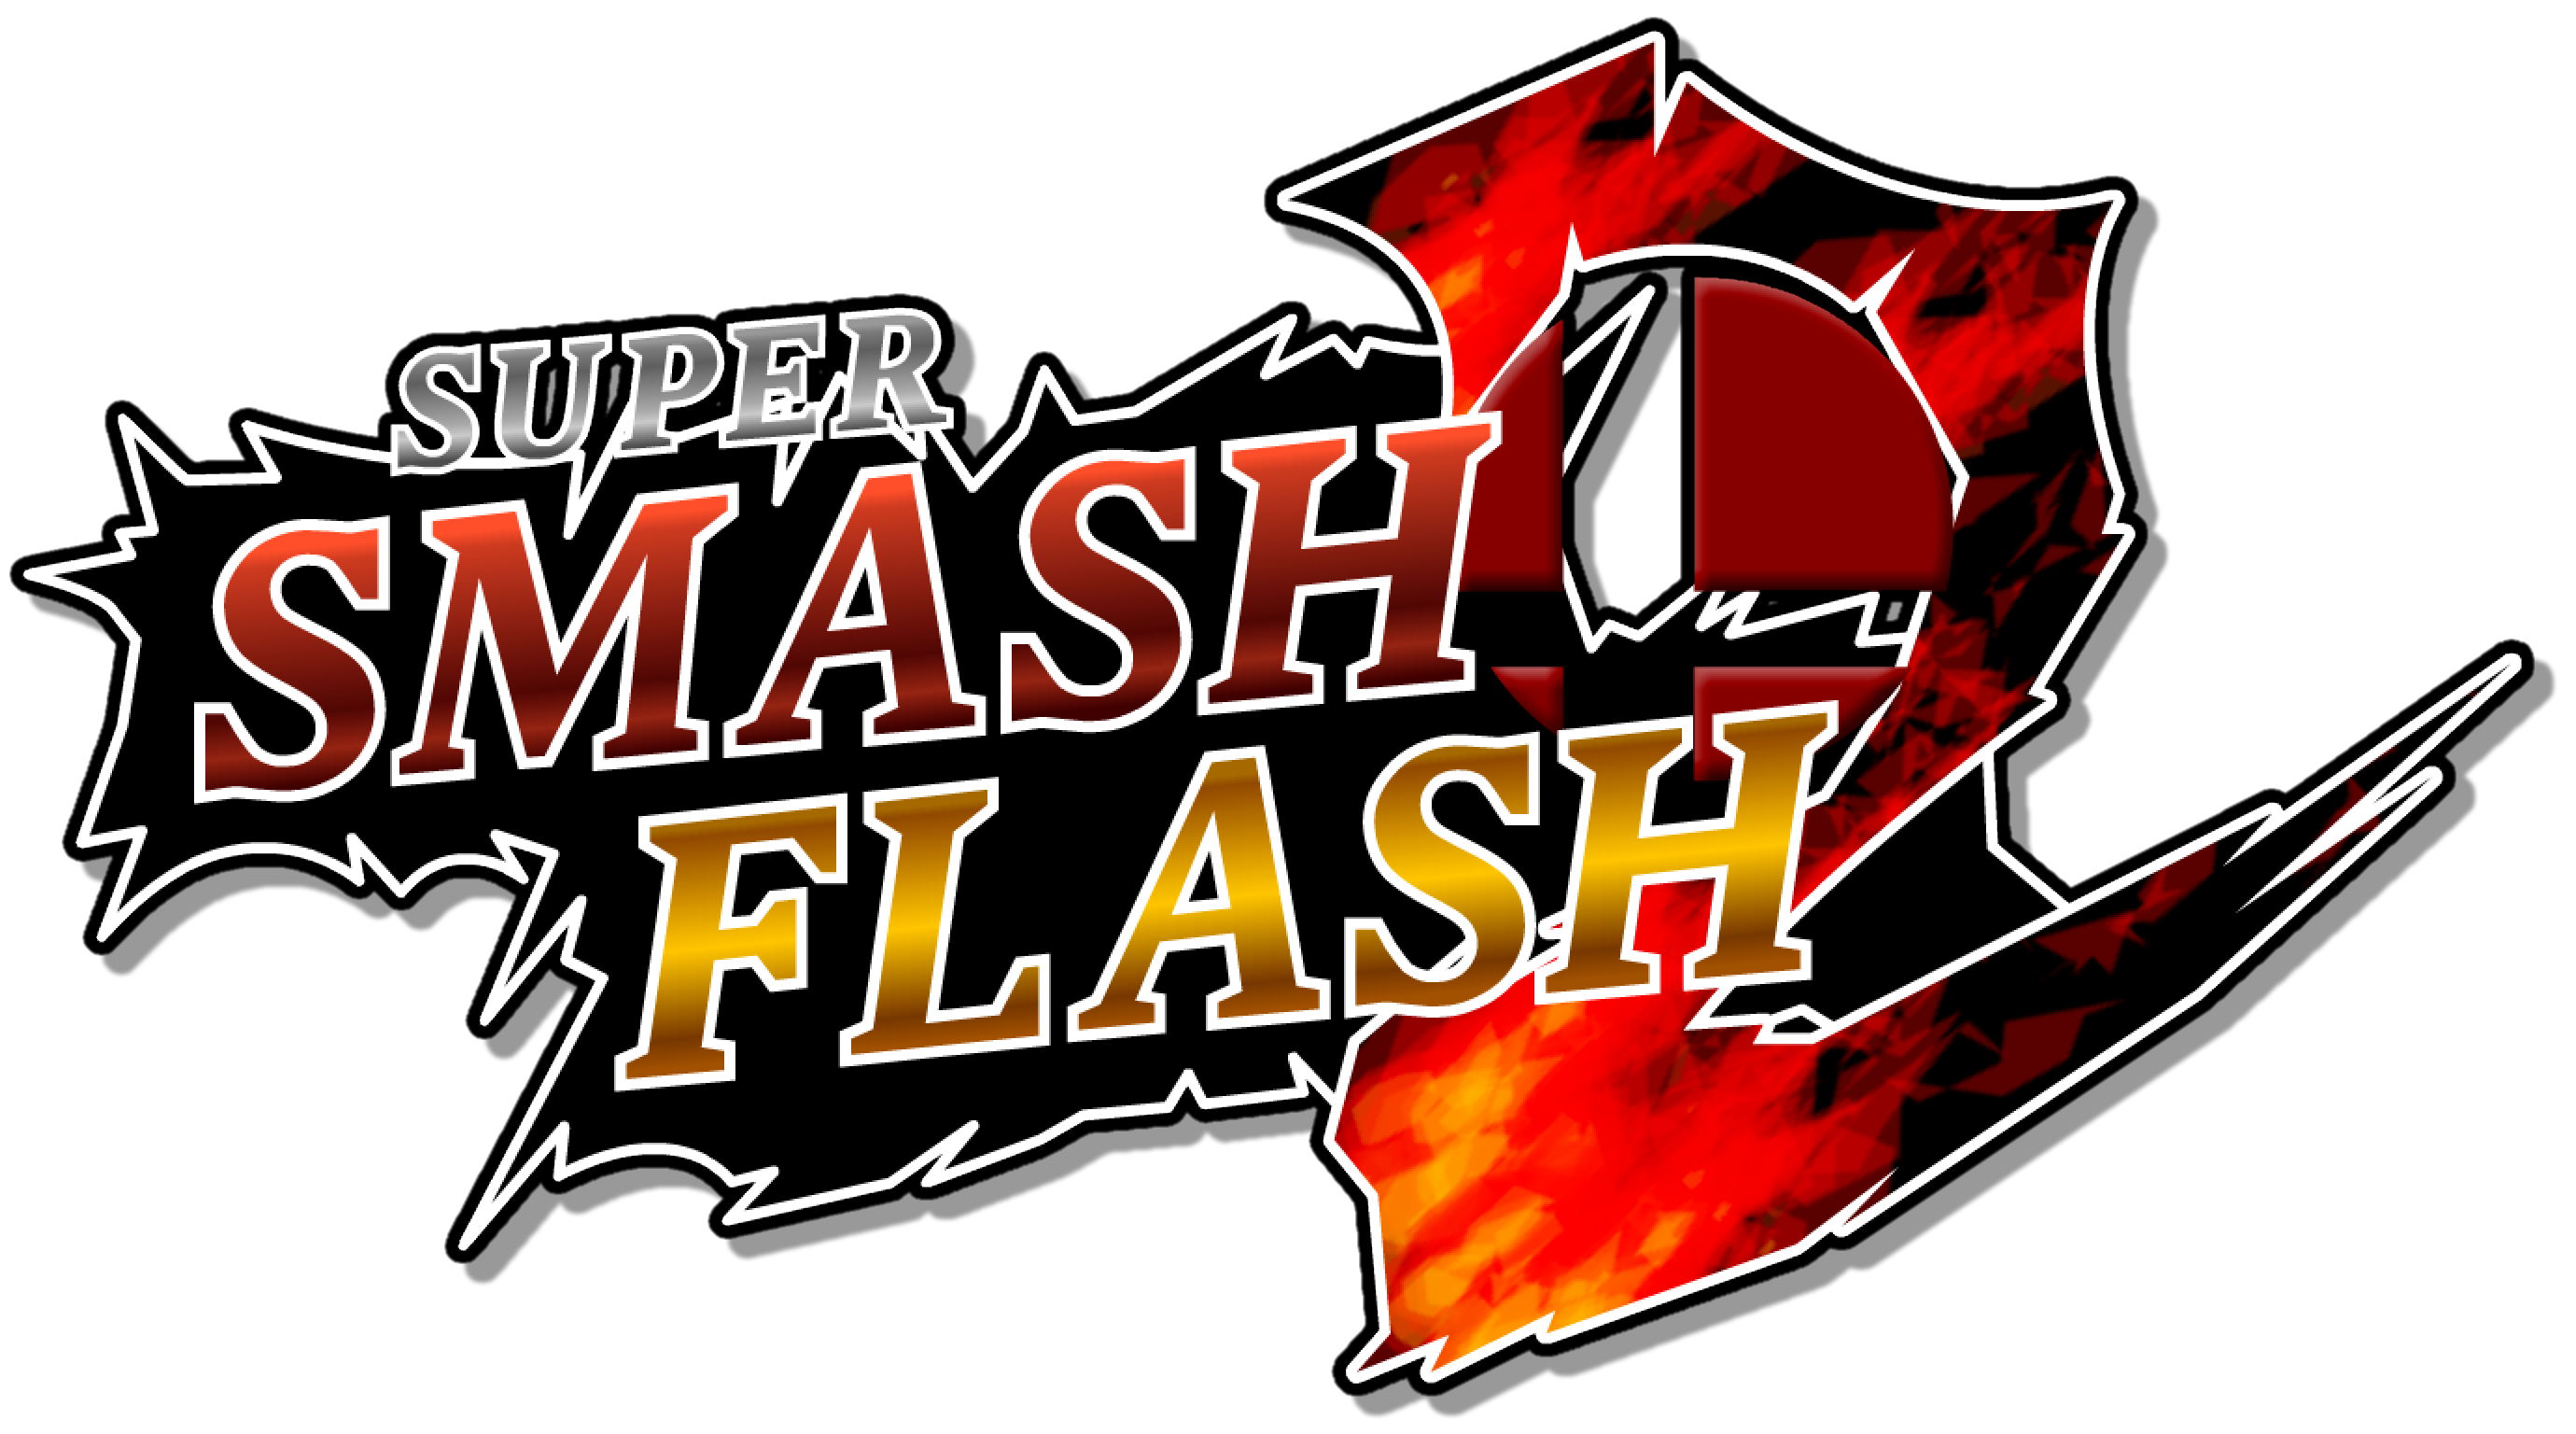 super smash flash 2 beta wiki